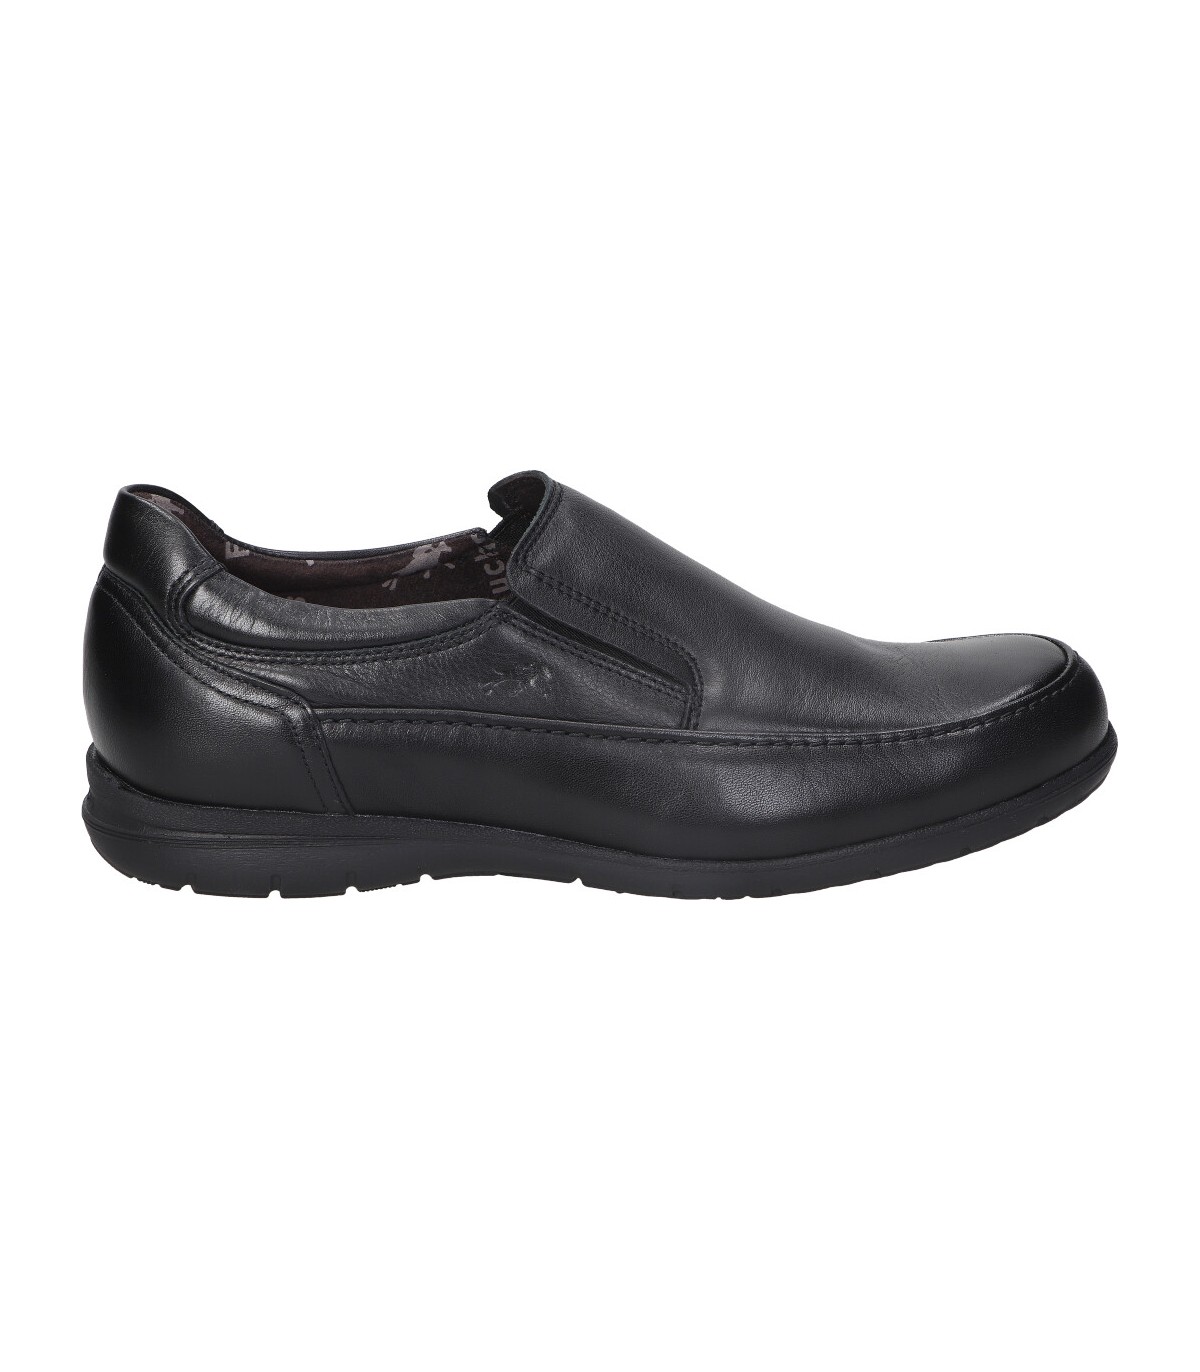 Zapatos mocasines negros de FLUCHOS 8499 en MEGACALZADO